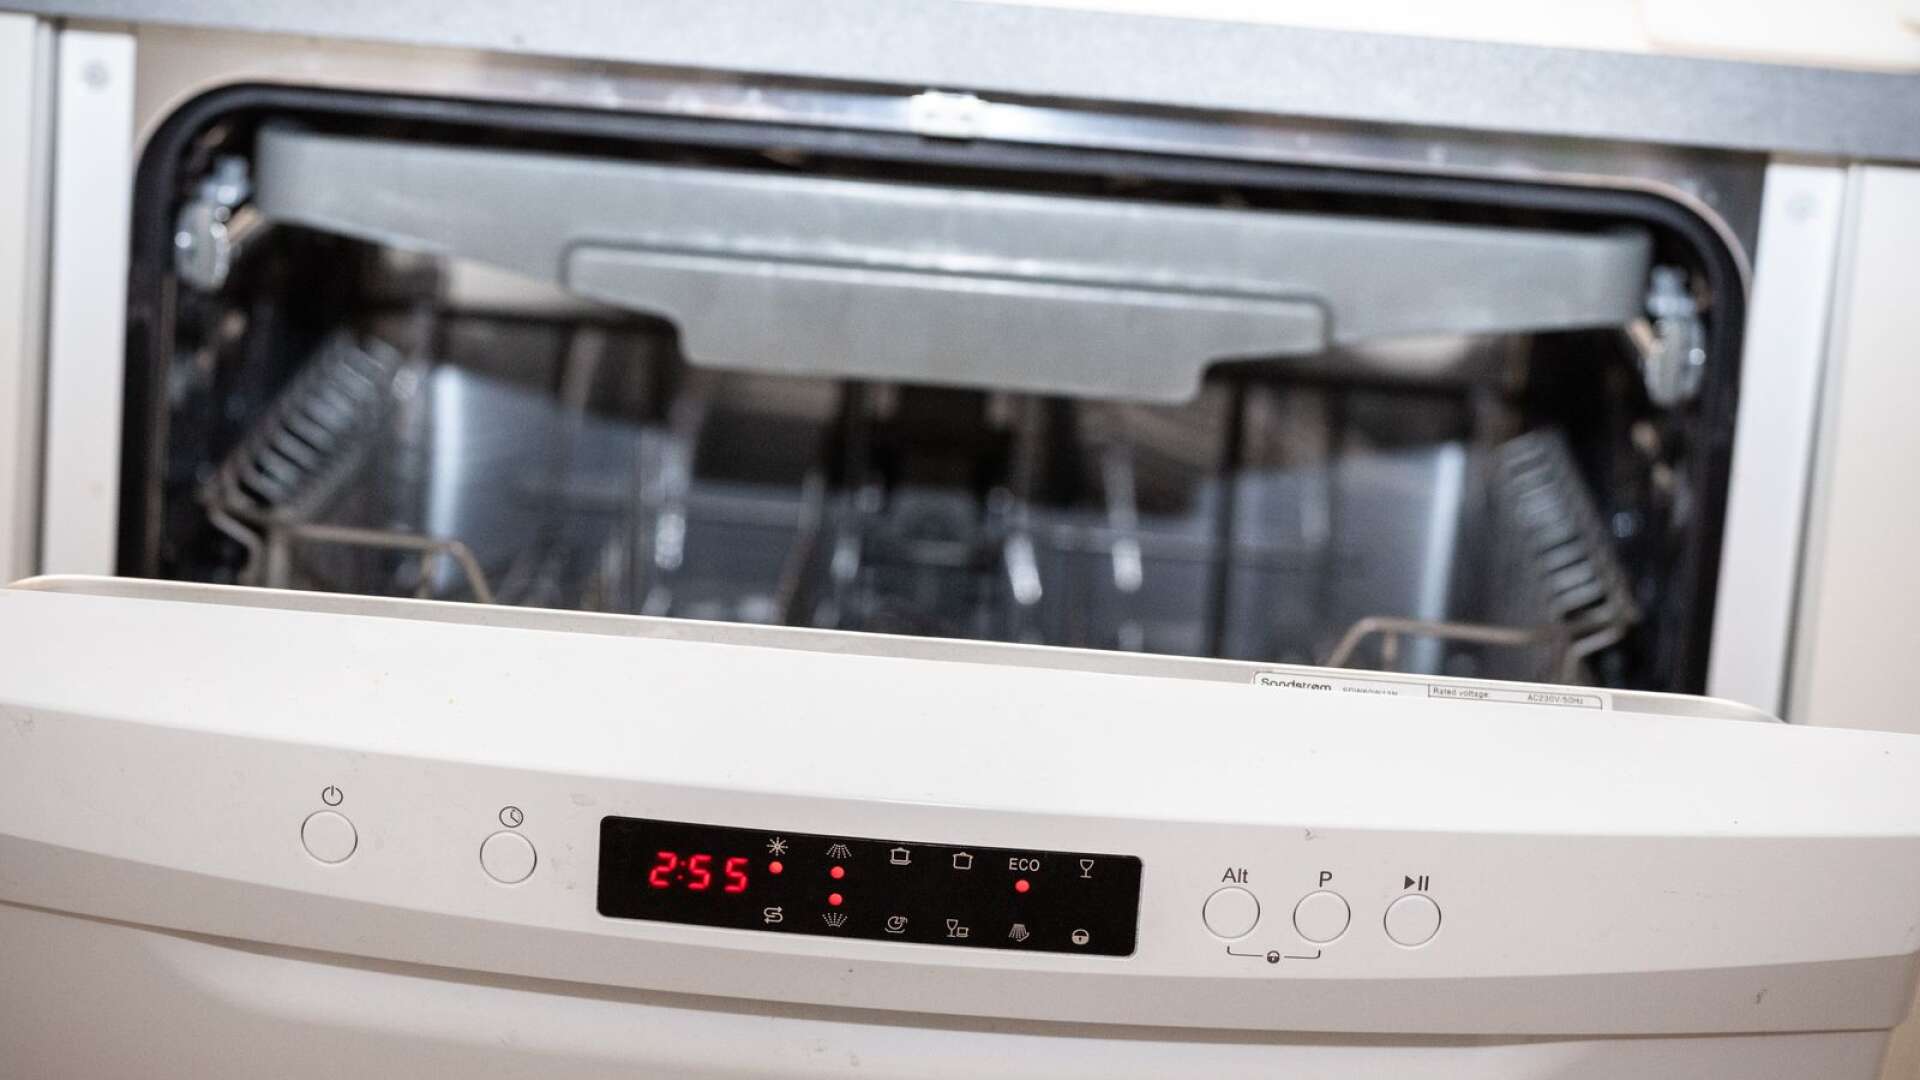 Den snabbaste, billigaste och miljövänligaste lösningen på höga elpriser är energieffektivisering, som att jämna ut elanvändningen under dygnet. Köra diskmaskin eller tvättmaskin på natten exempelvis. 